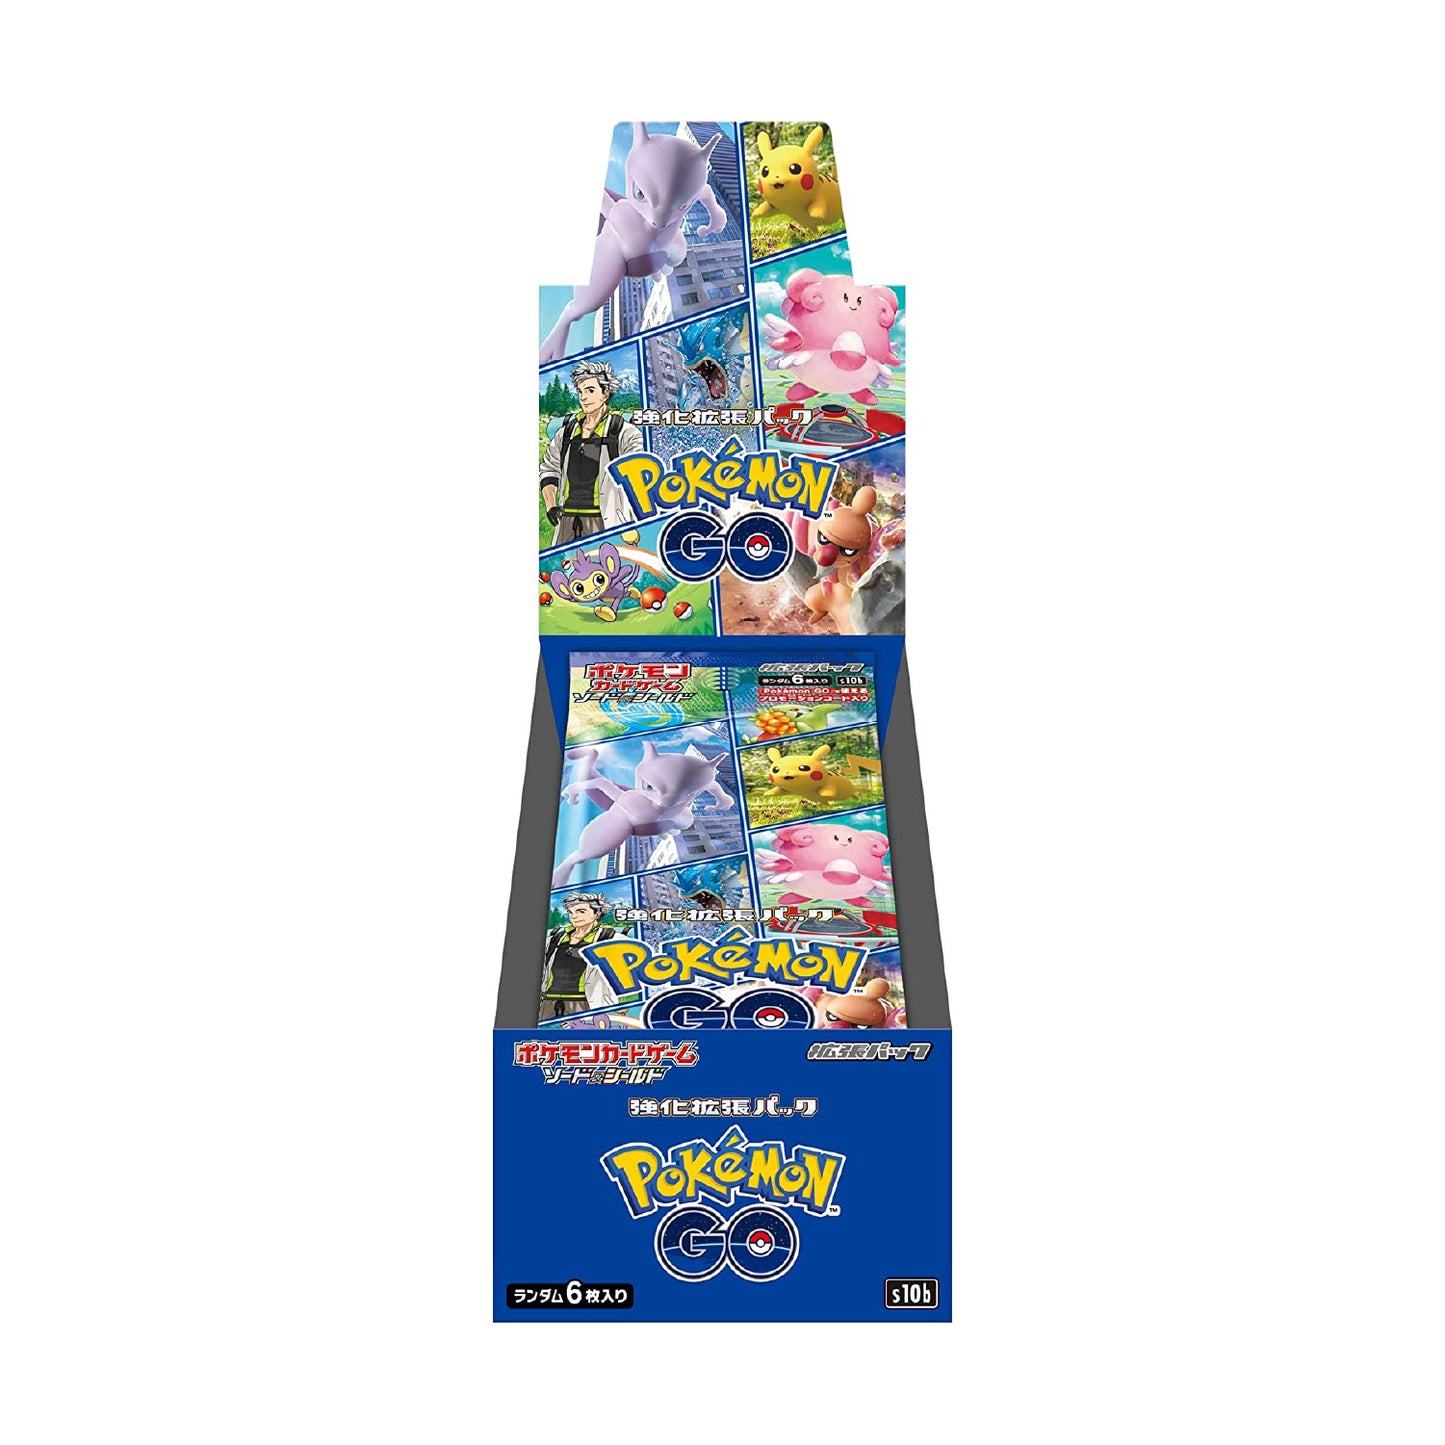 Display 20 boosters Pokémon GO (s10b) 🇯🇵